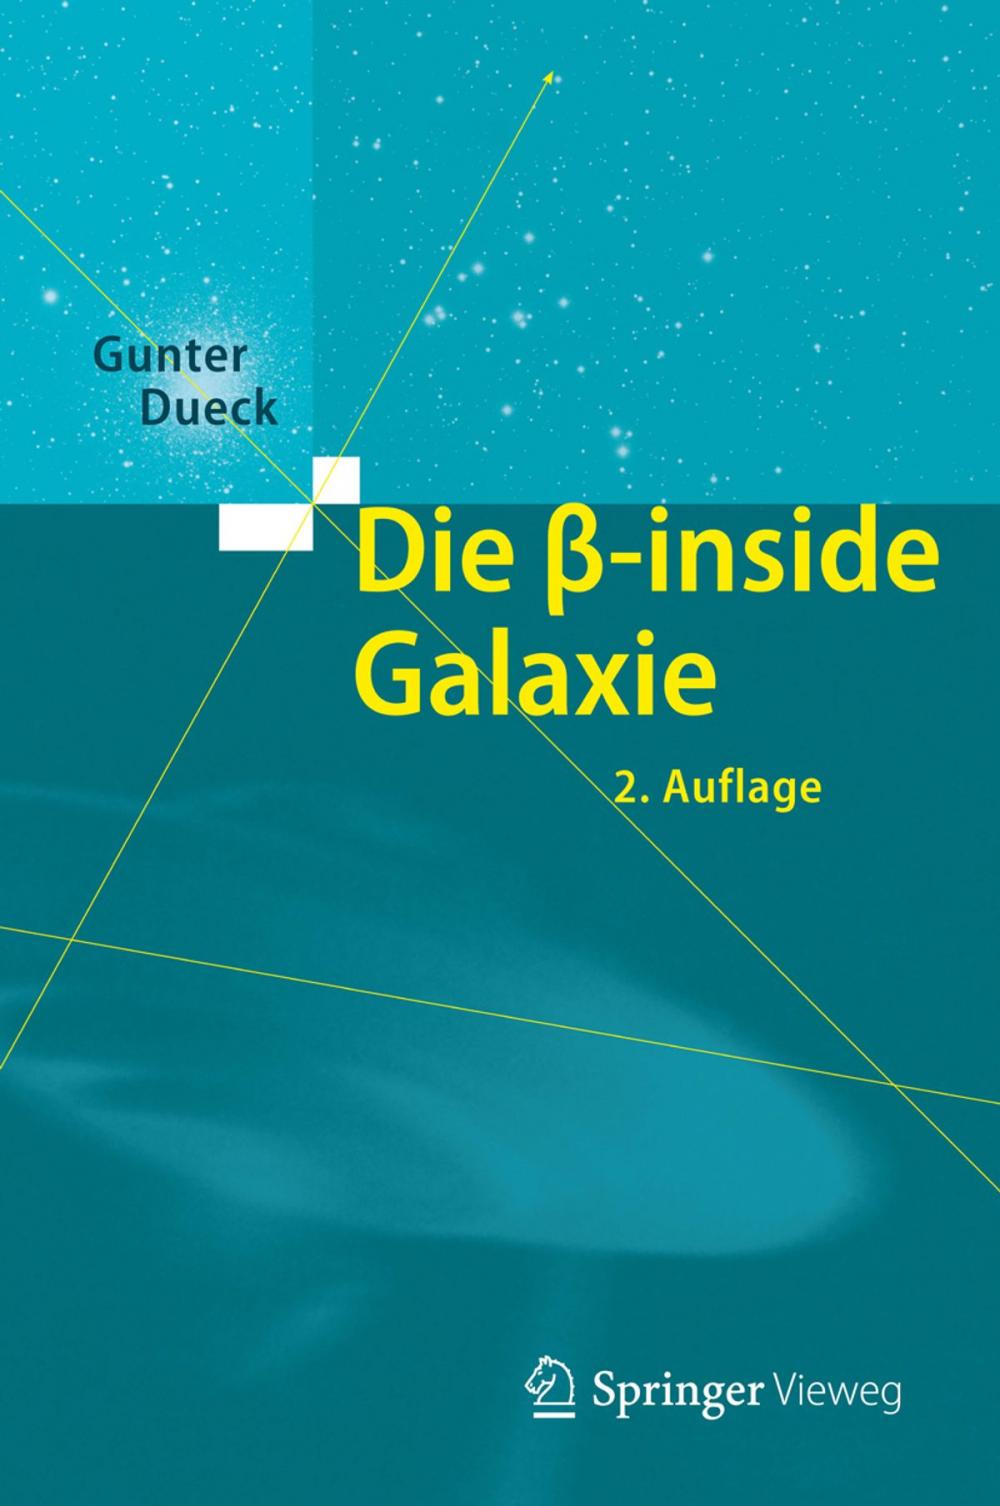 Big bigCover of Die beta-inside Galaxie